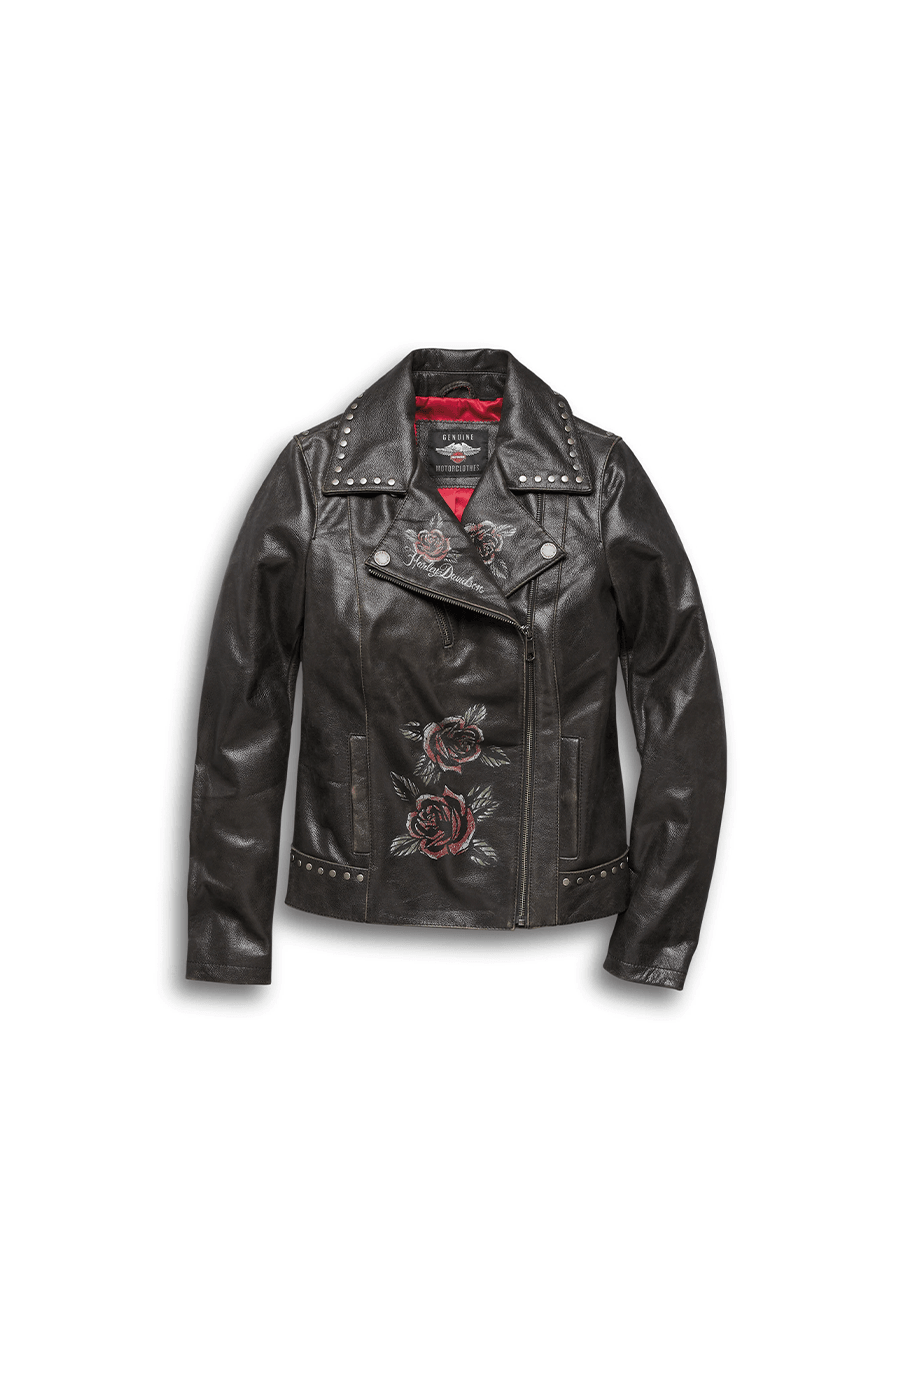 Harley-Davidson® Women's Roses & Studs Leather Biker Jacket